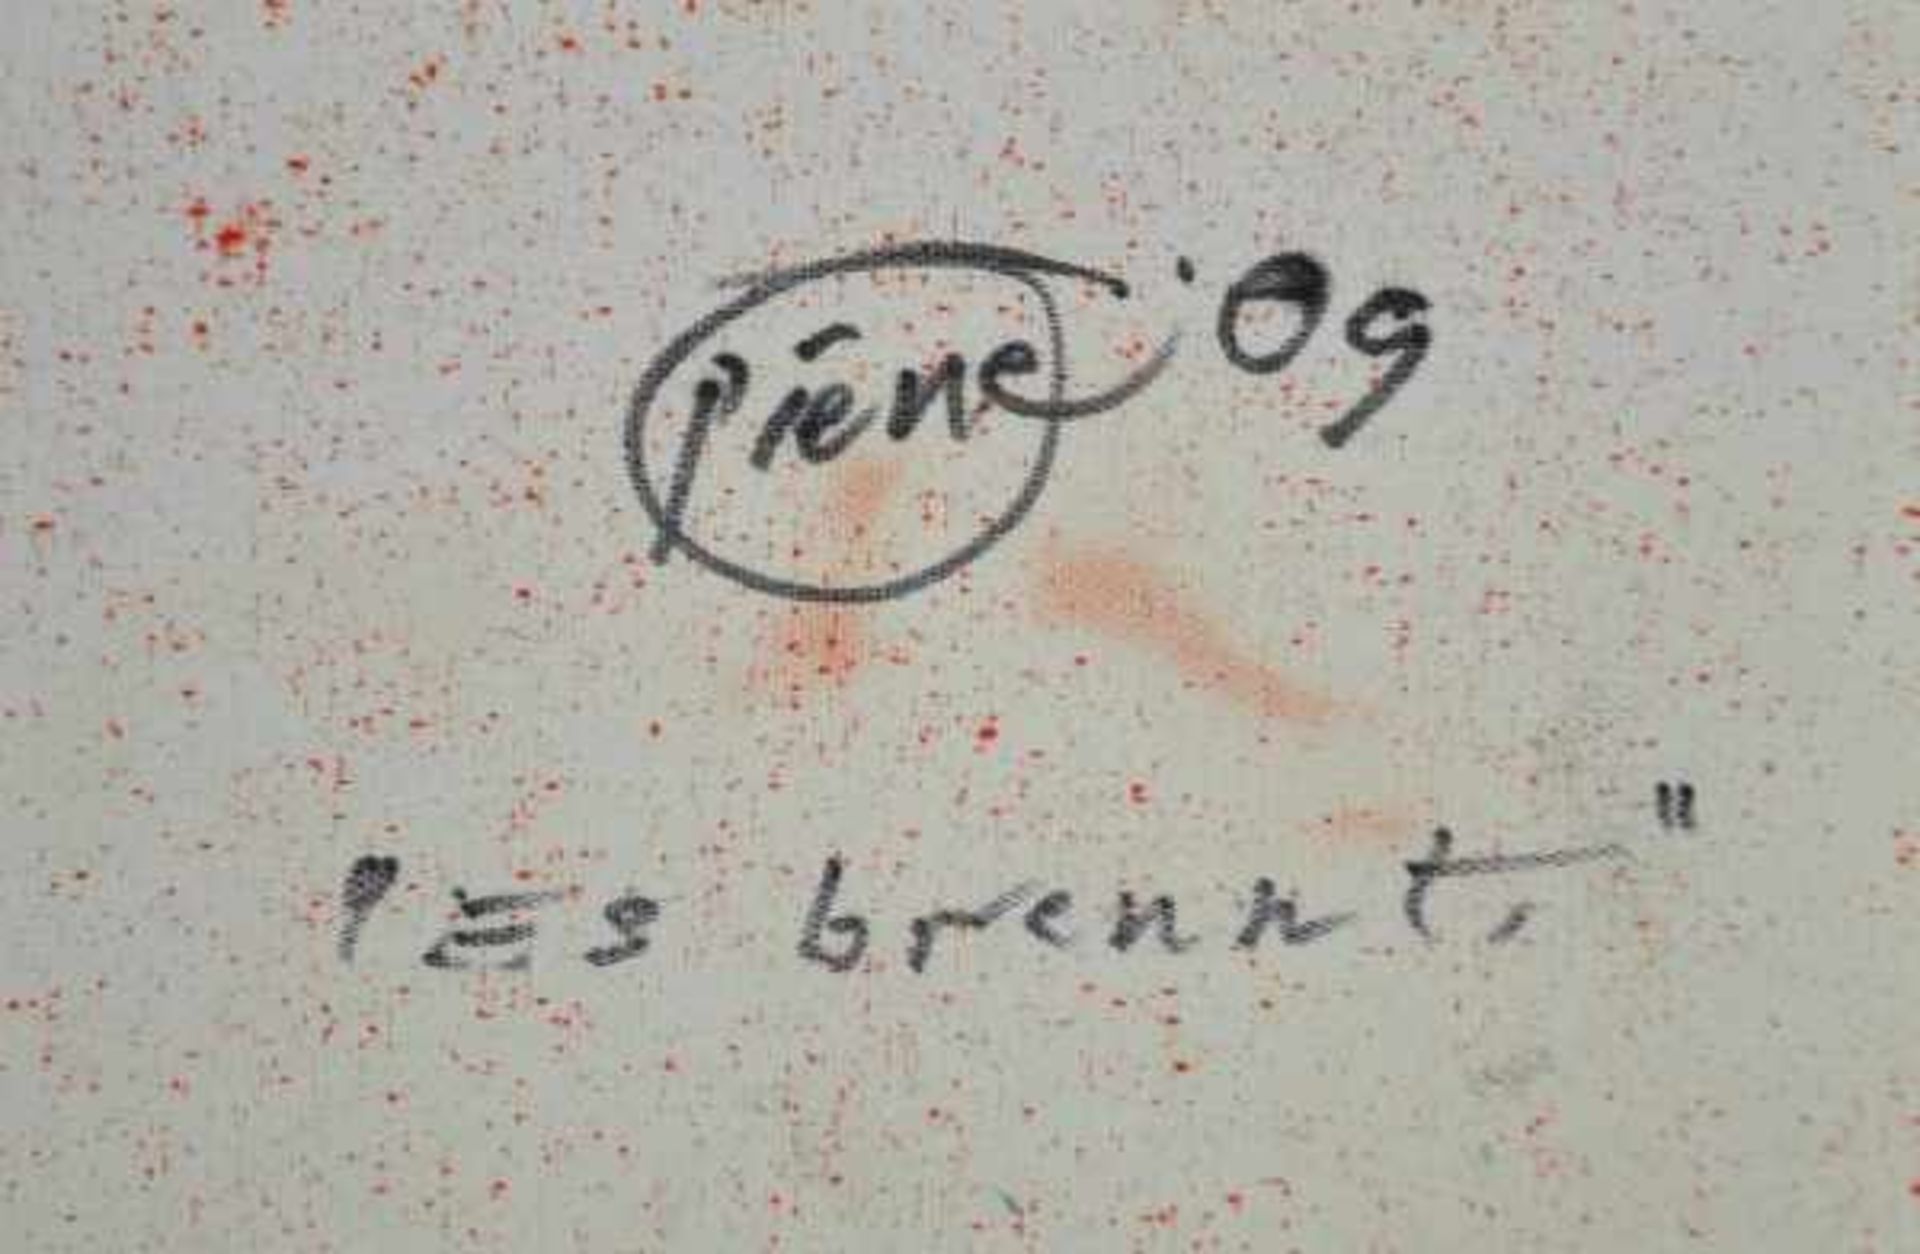 PIENE Otto (1928 Laasphe - 2014 Berlin) "Es brennt", rückseitig auf der Leinwand signiert, datiert - Bild 3 aus 5